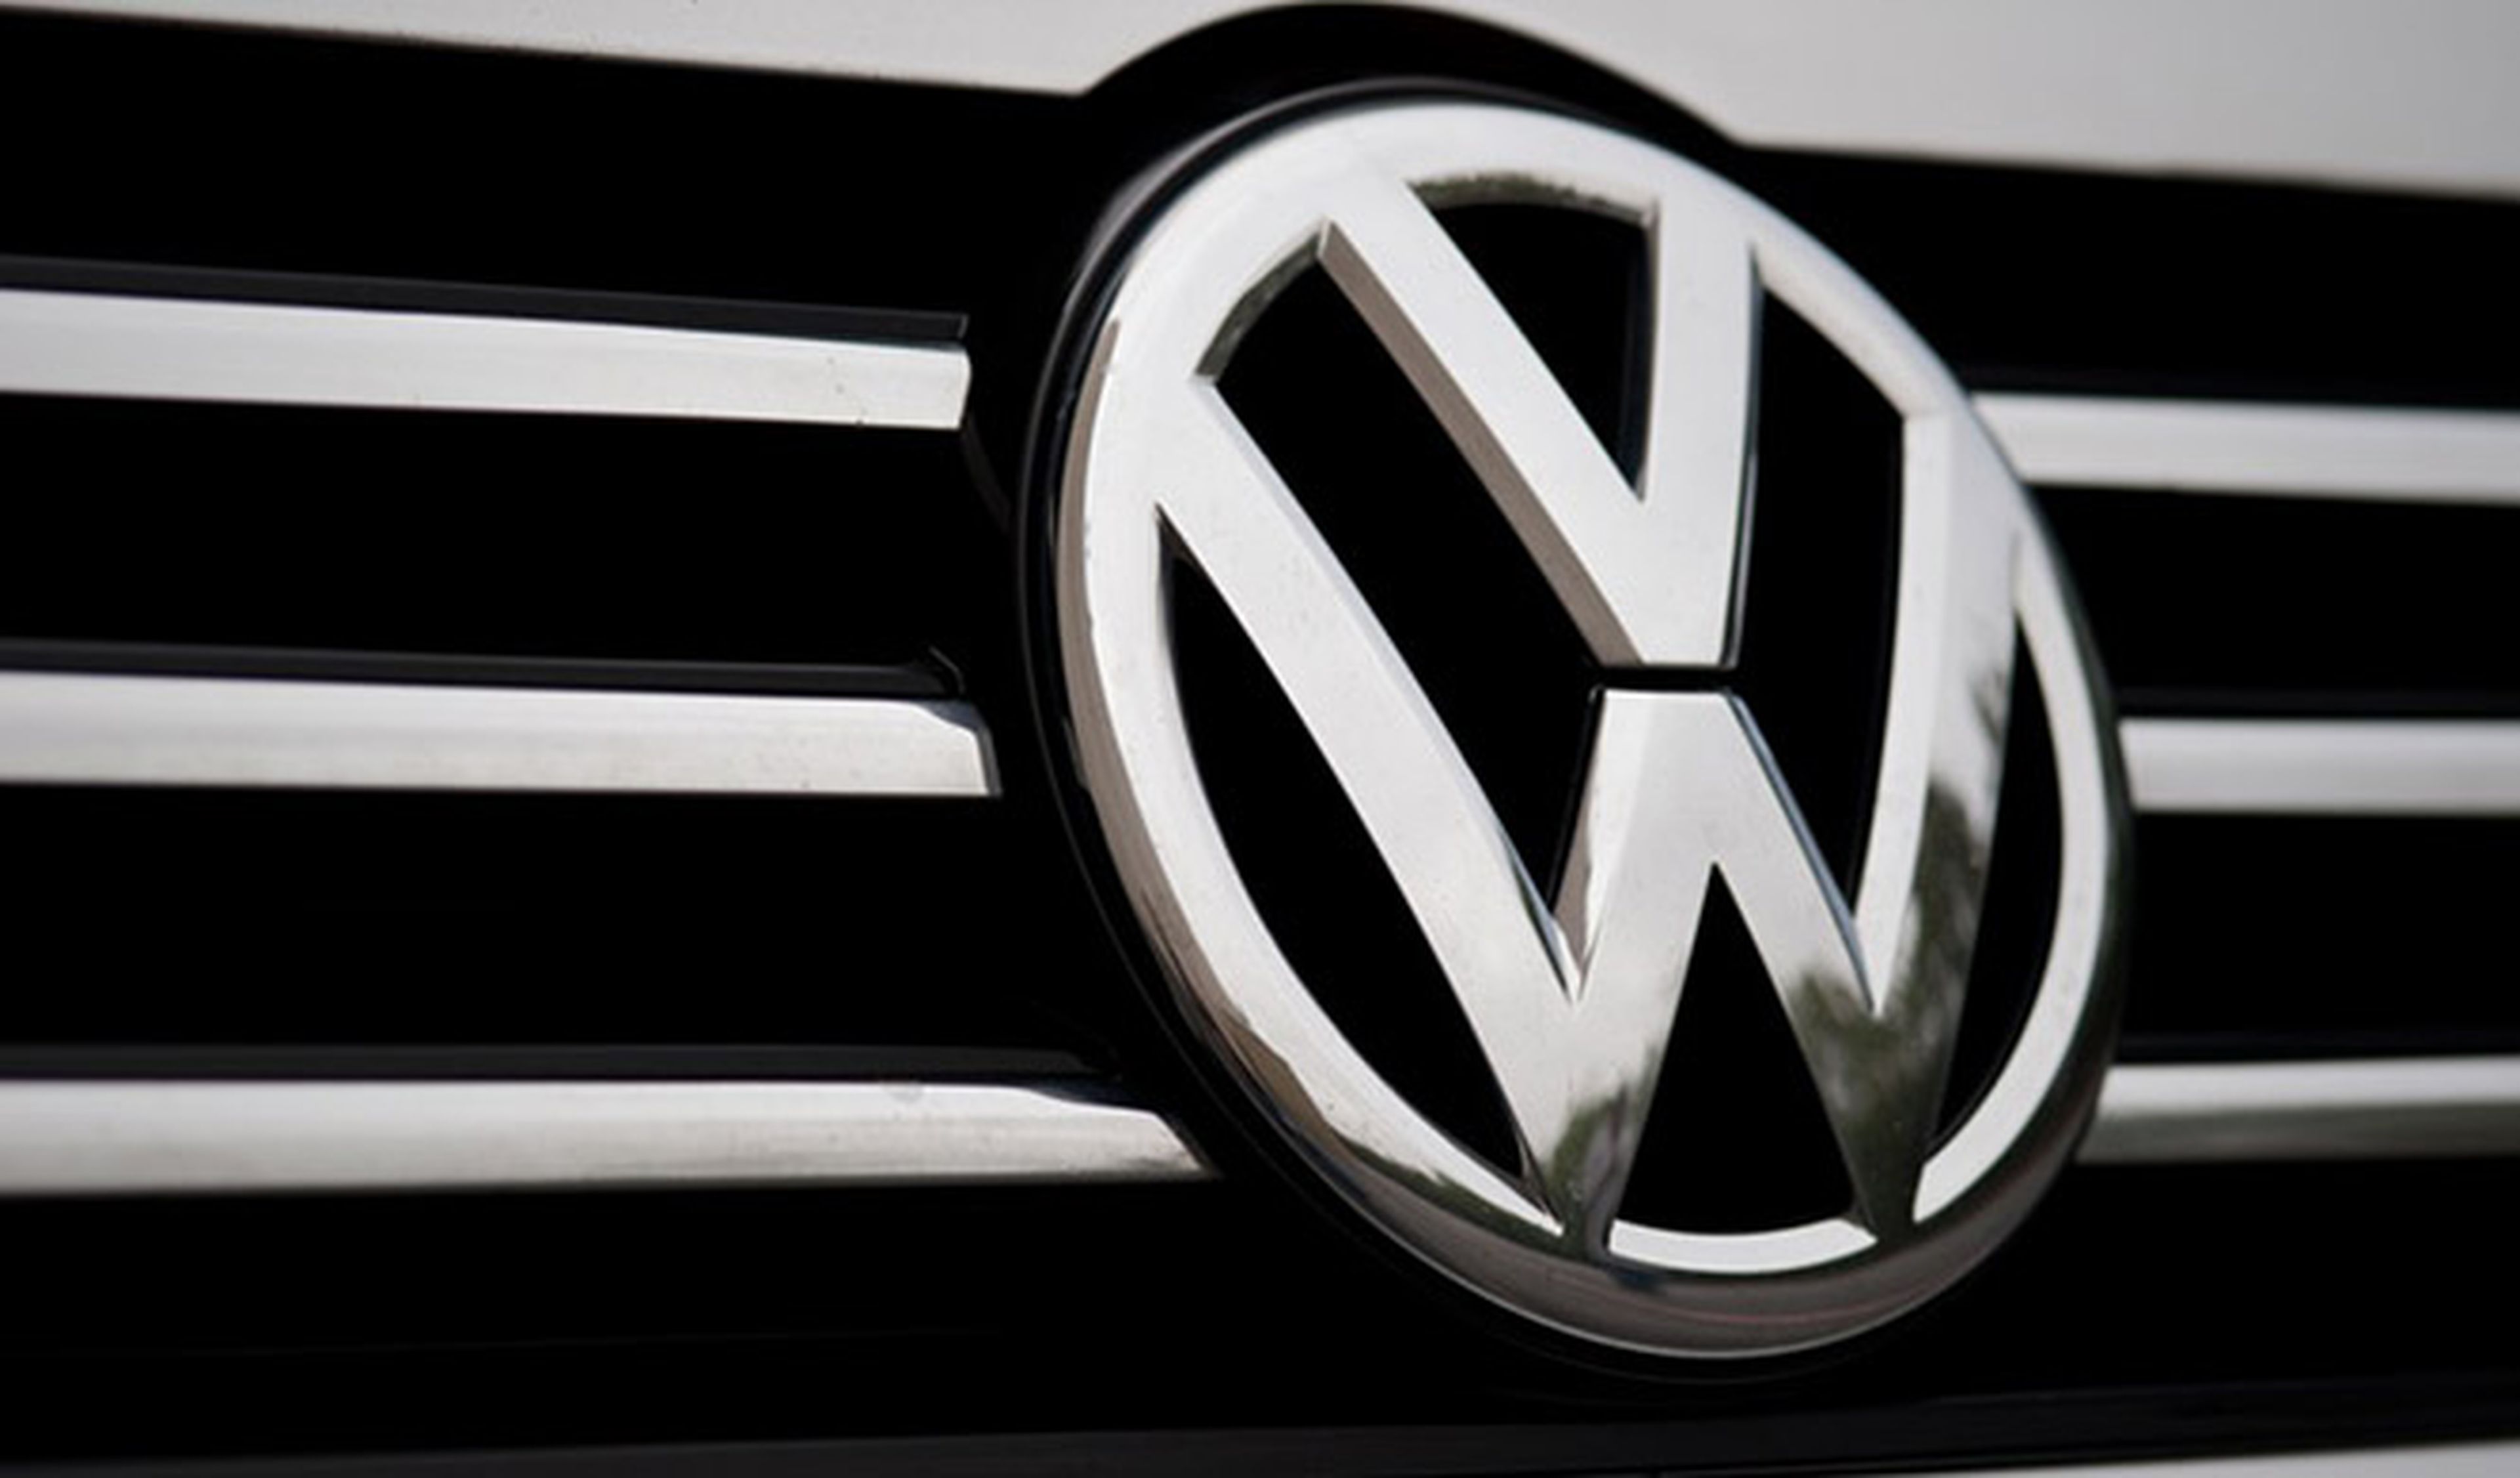 Así falseaba Volkswagen los resultados antipolución